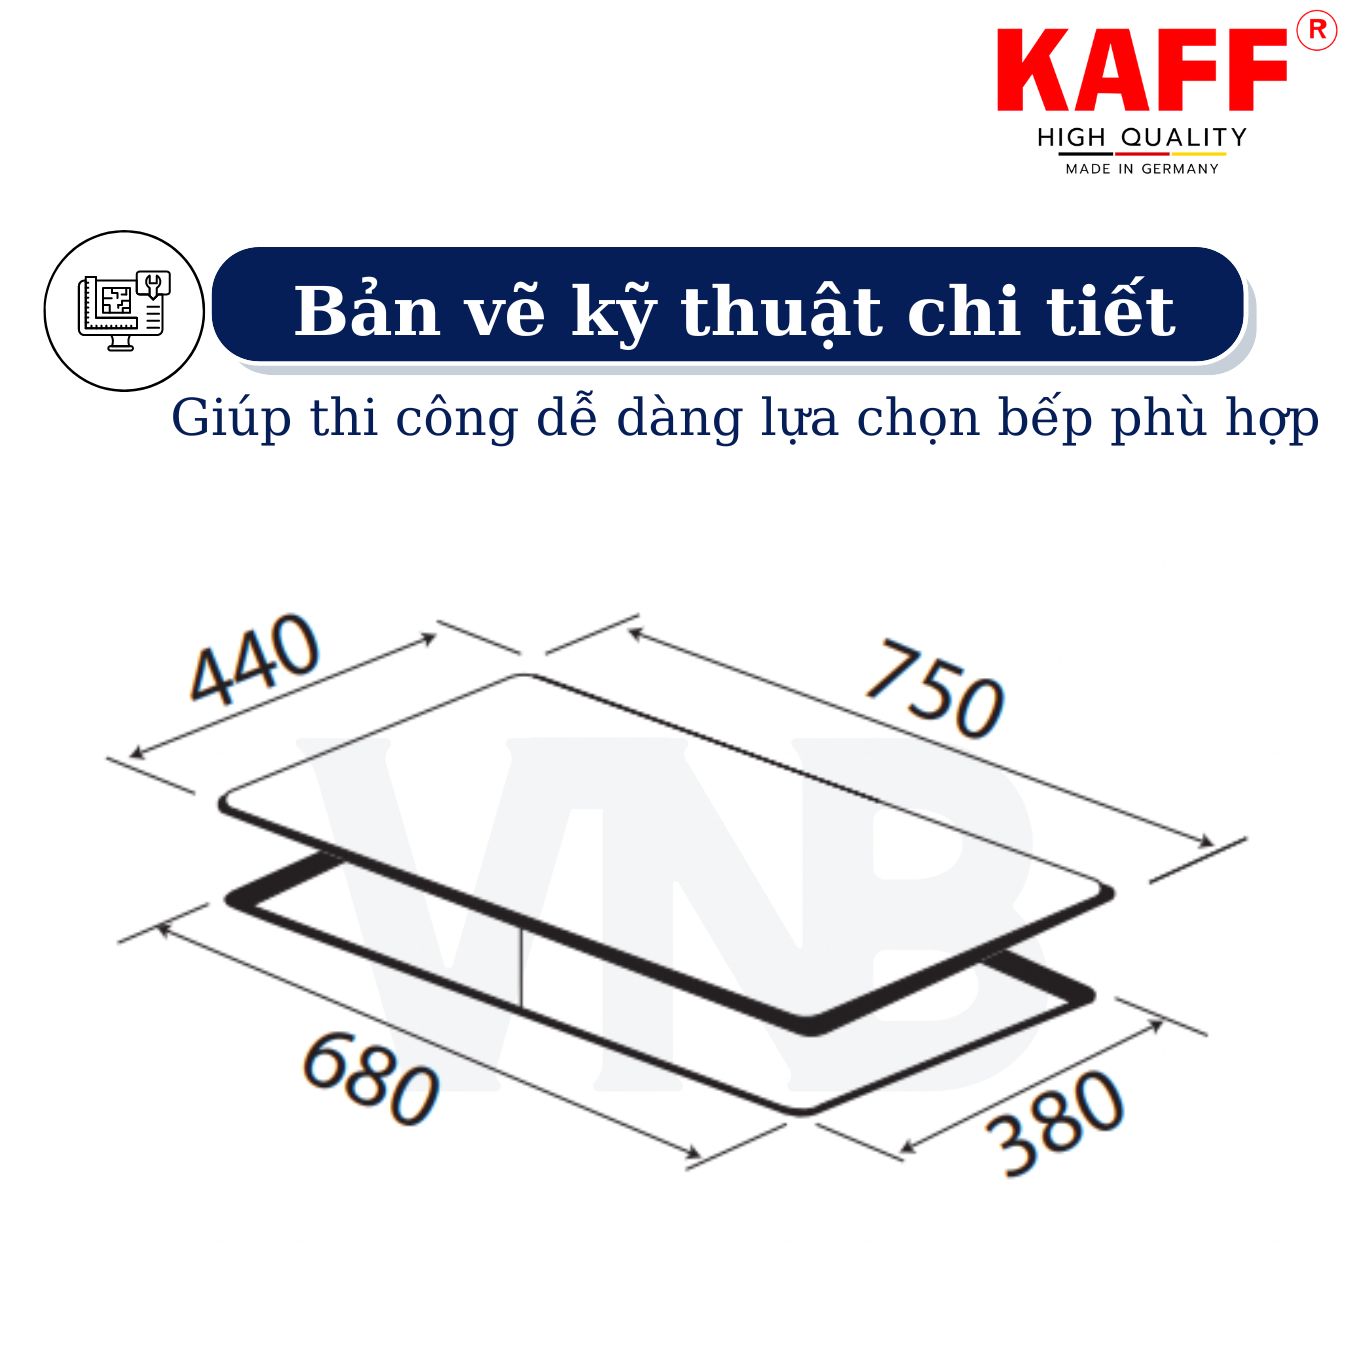 Bộ Bếp ga âm viền sọc KAFF KF- 212 bao gồm: Bếp ga + chảo chống dính cao cấp + bộ van ga - Hàng chính hãng